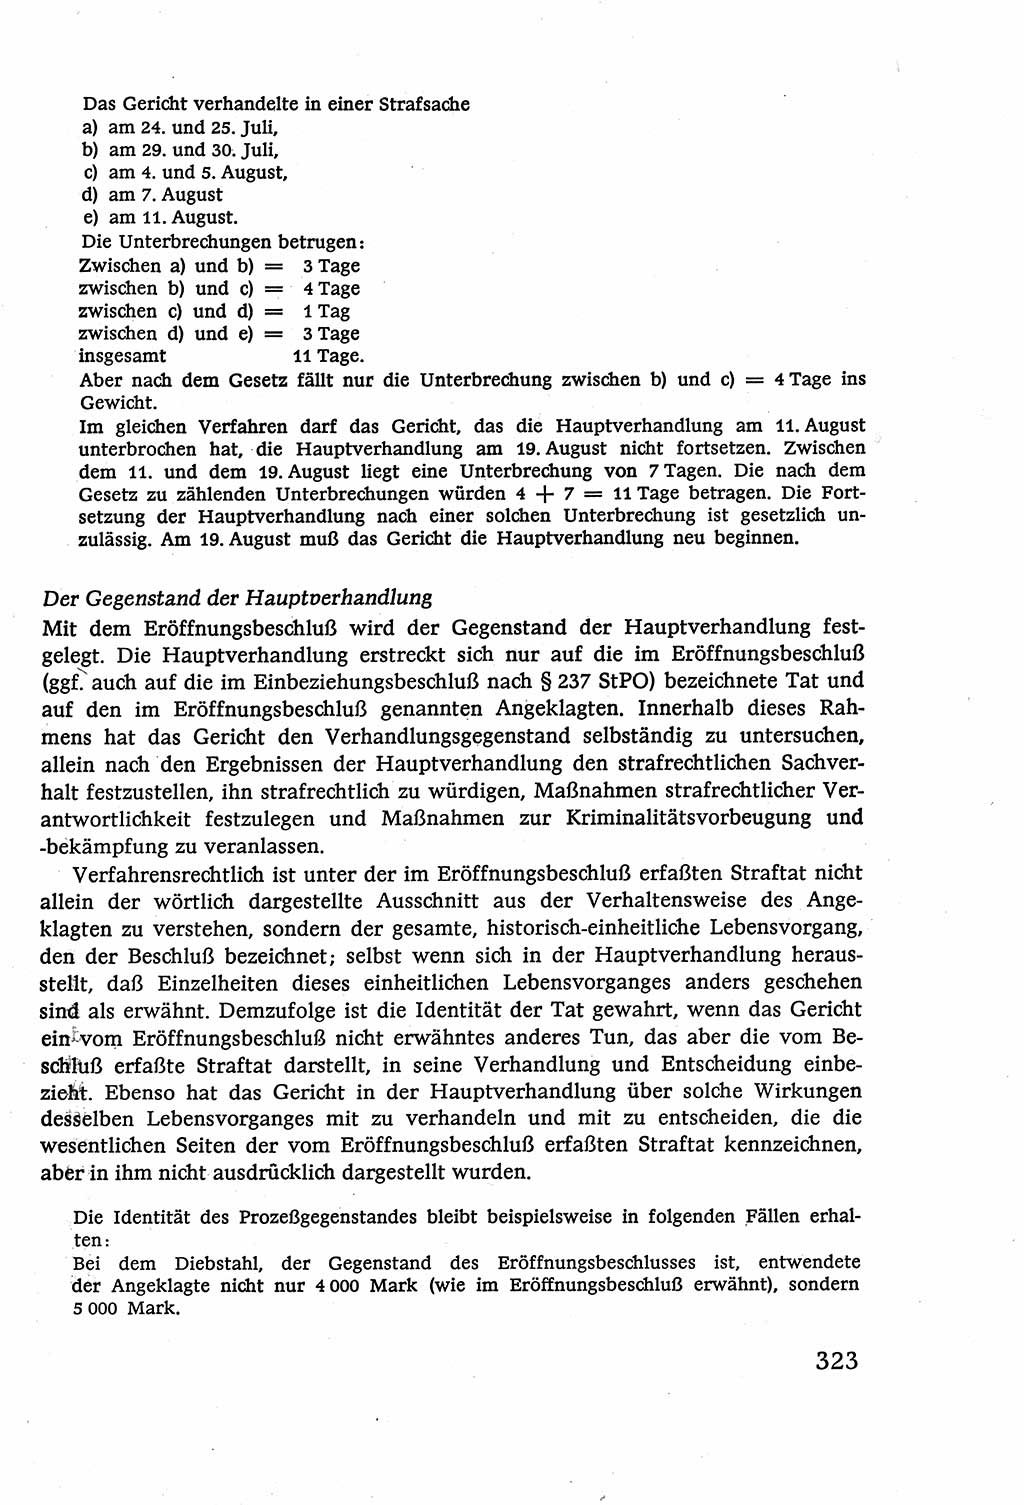 Strafverfahrensrecht [Deutsche Demokratische Republik (DDR)], Lehrbuch 1977, Seite 323 (Strafverf.-R. DDR Lb. 1977, S. 323)